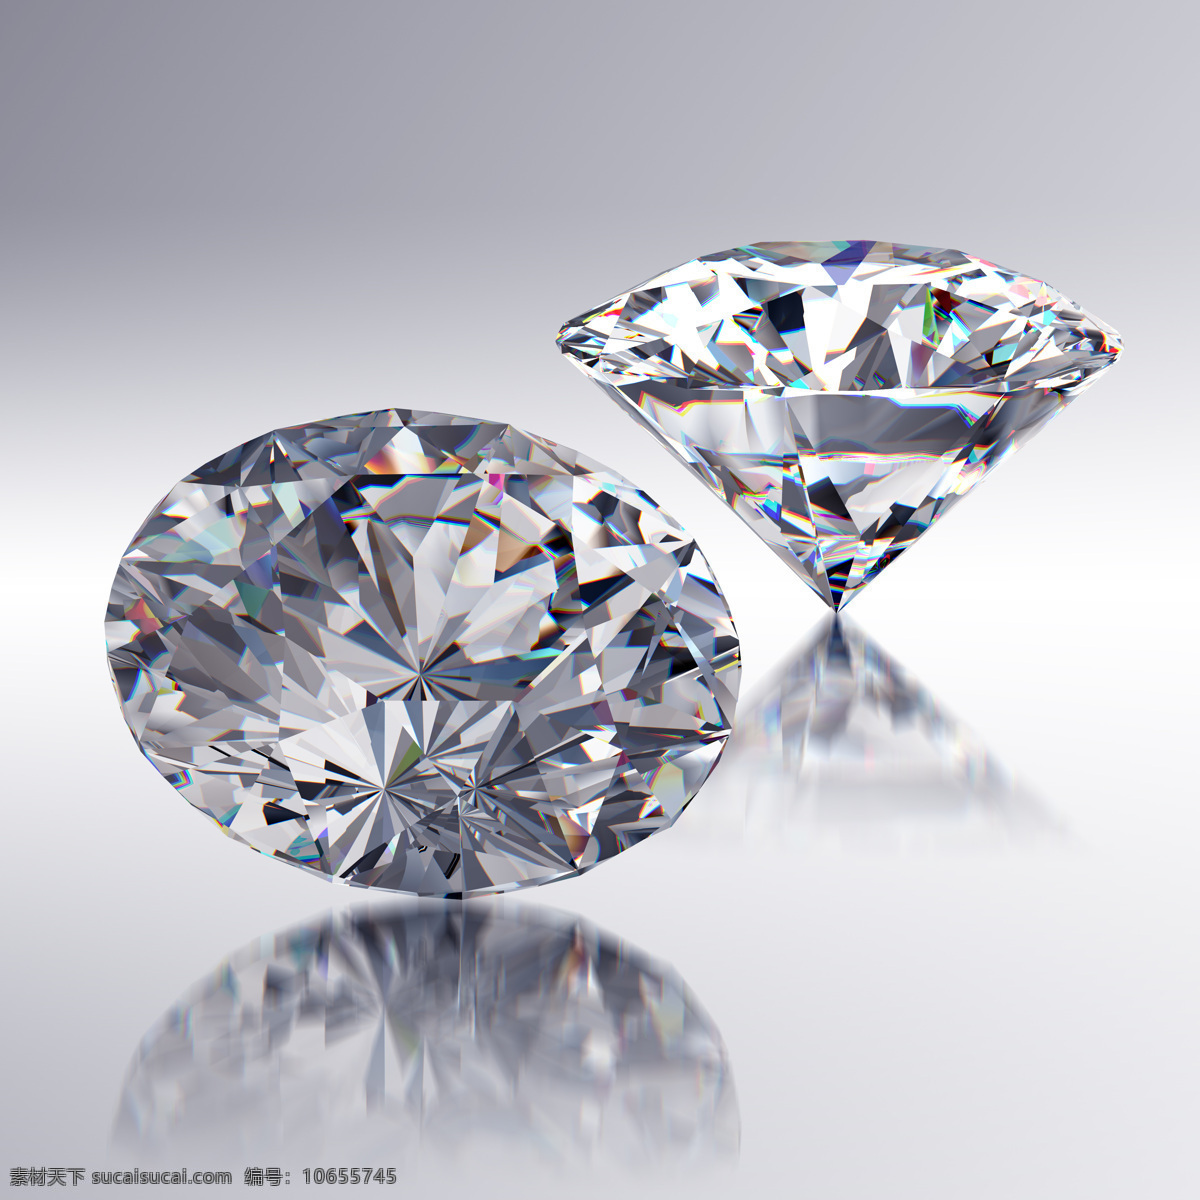 水晶 钻石 裸钻 水晶钻石 婚戒钻石 戒指钻石 饰品 珠宝服饰 生活百科